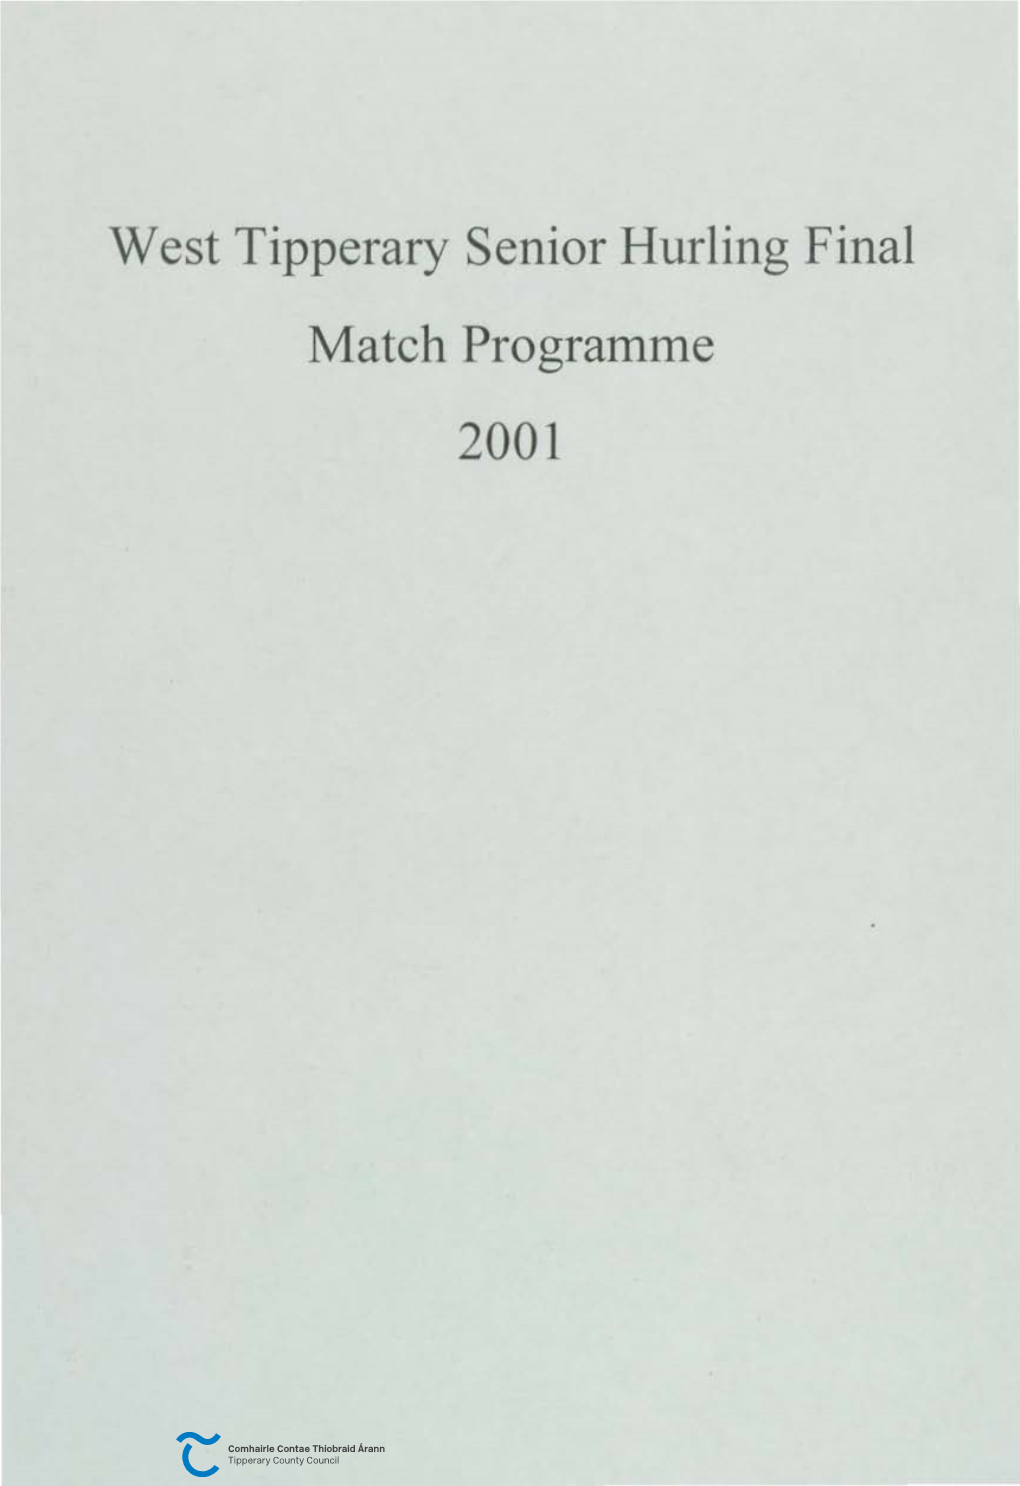 West Tipperary Senior Hurling Final Match Programme 2001 CUMANN Liithchleas Gall - Tlobraid ARANN THIAR